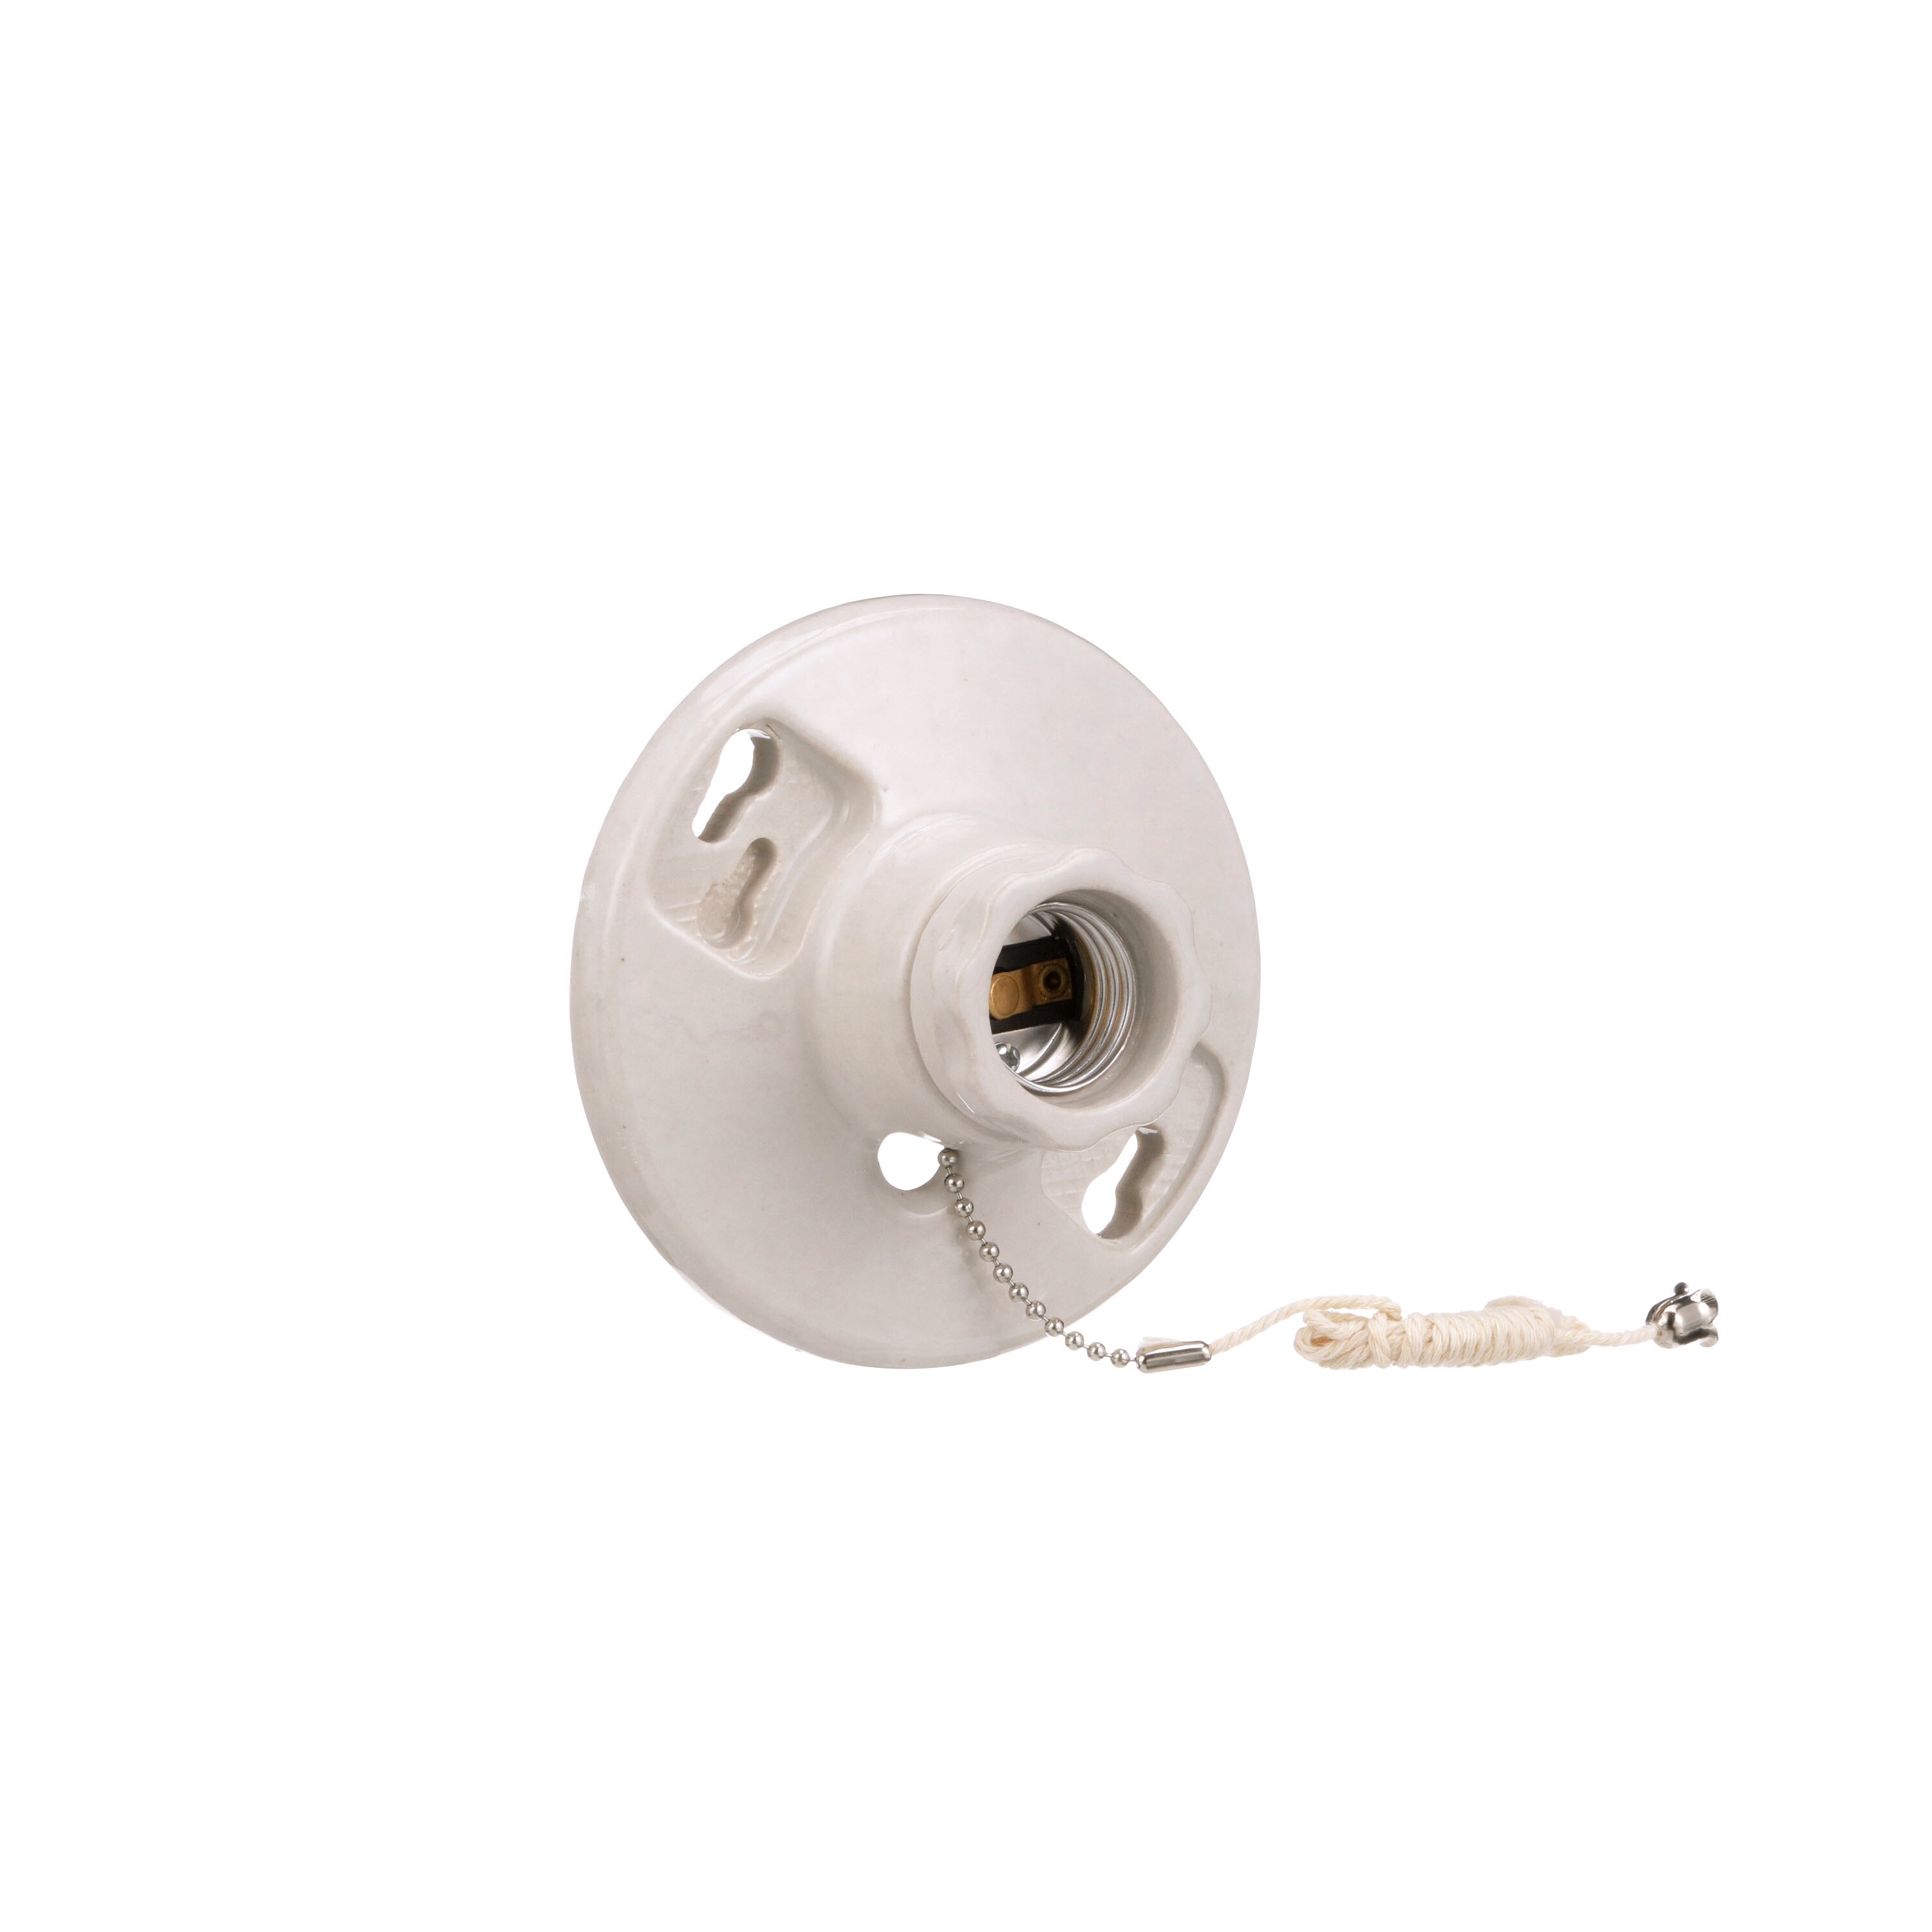 Eaton-W,250-V Med Base Ceiling Receptacle Lamp Holder,Porcelain,White 